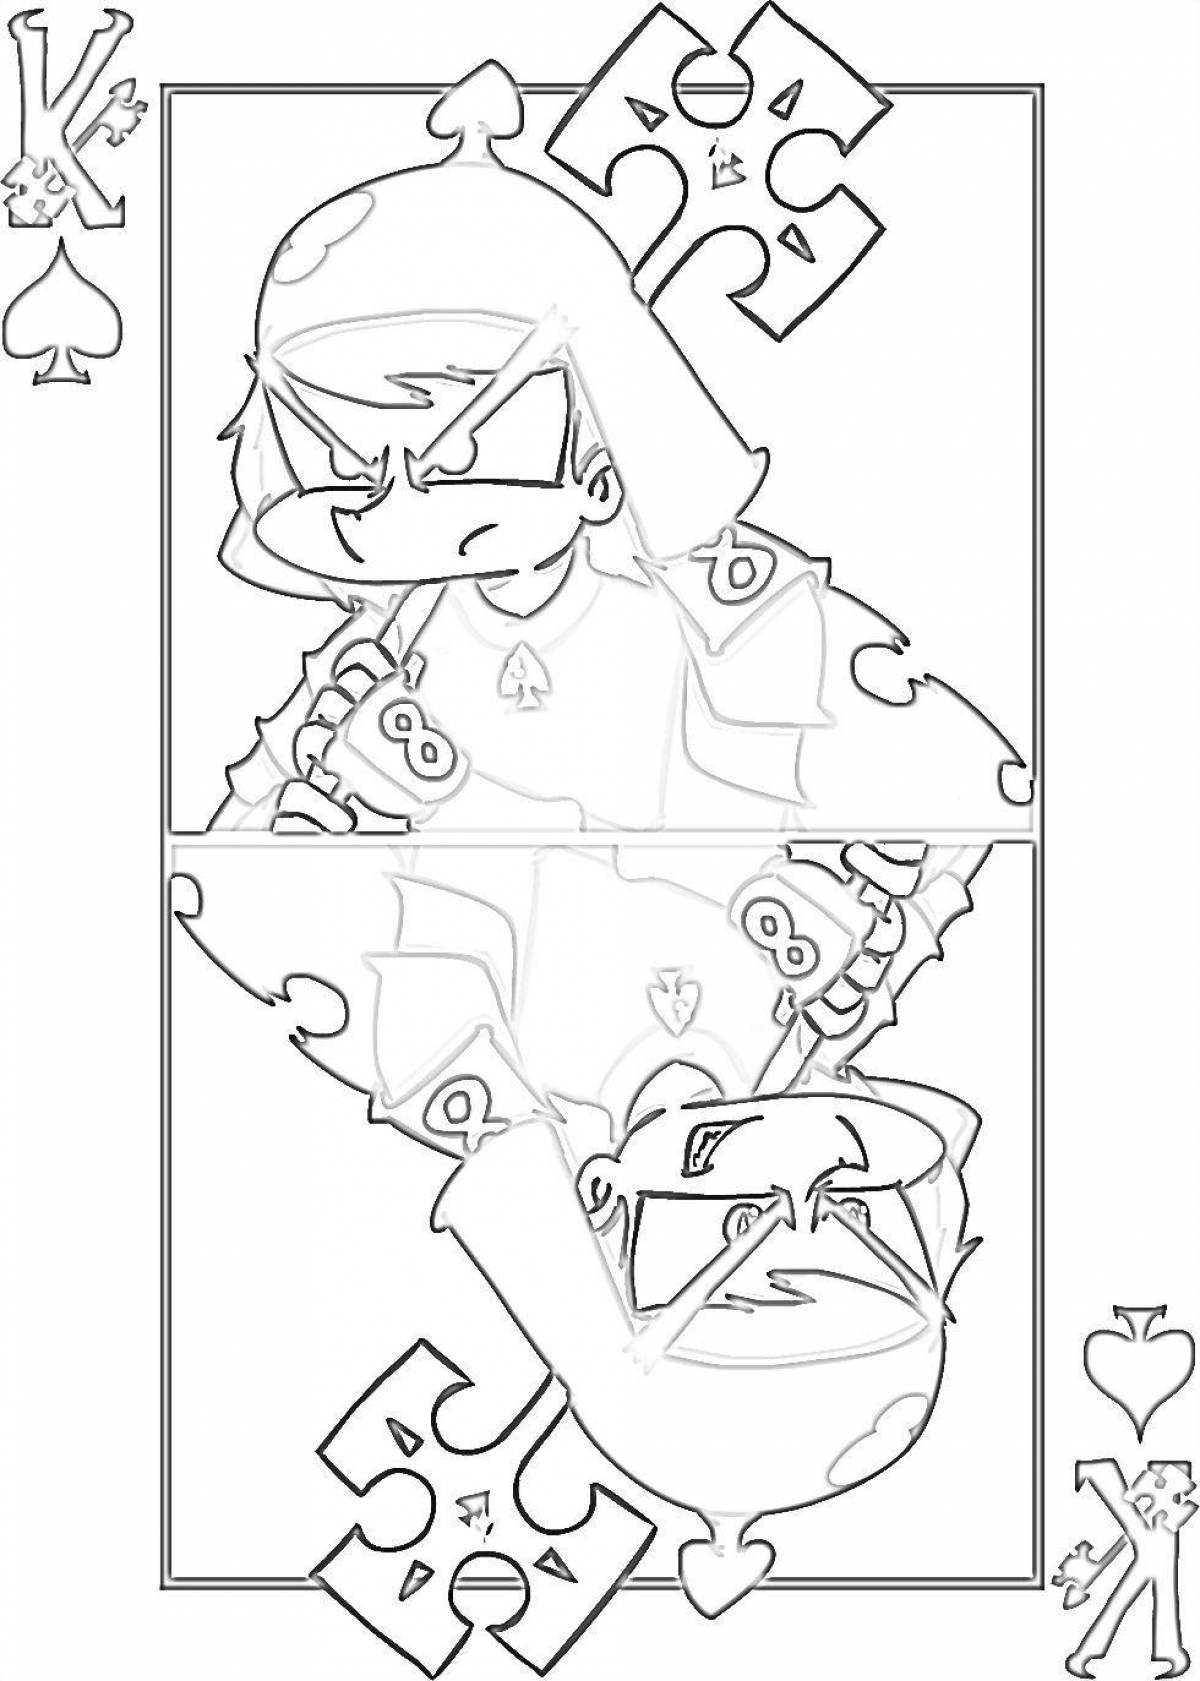 Увлекательная раскраска mafia 13 cards